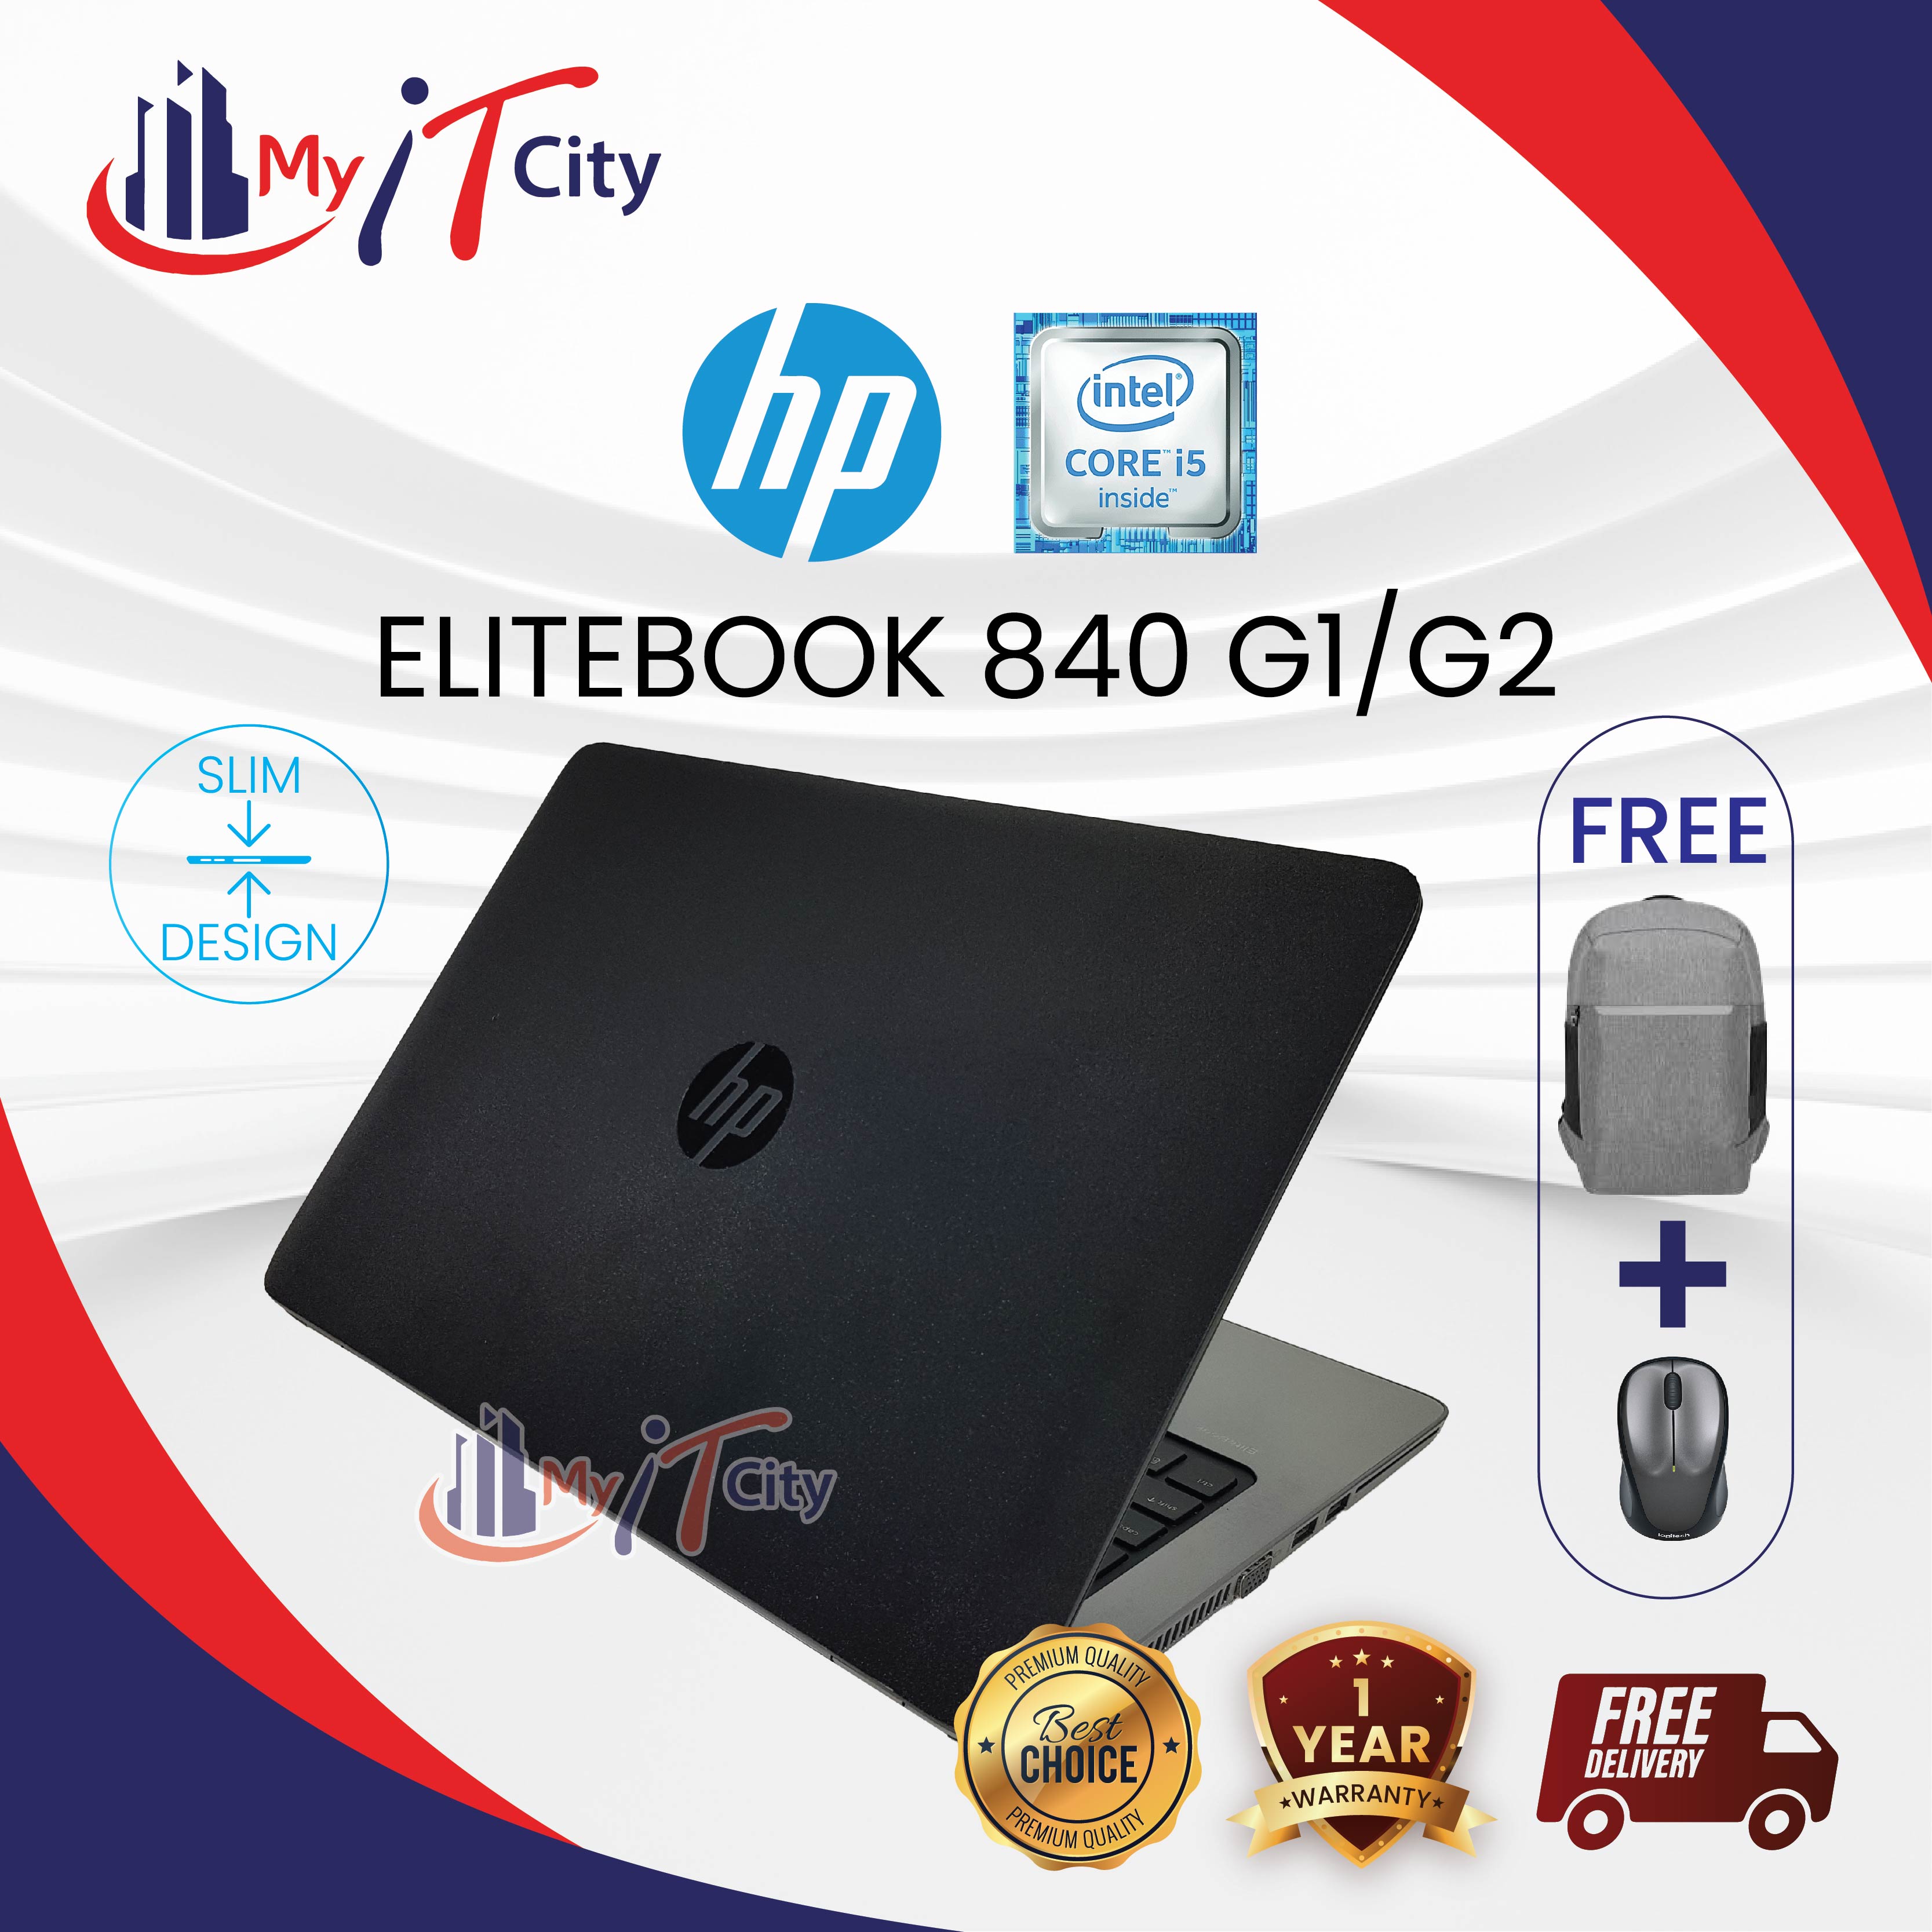 HP ELITEBOOK 840 G2 - Intel i5 (5th Gen)/4GB/180B SSD/Windows 10 Pro